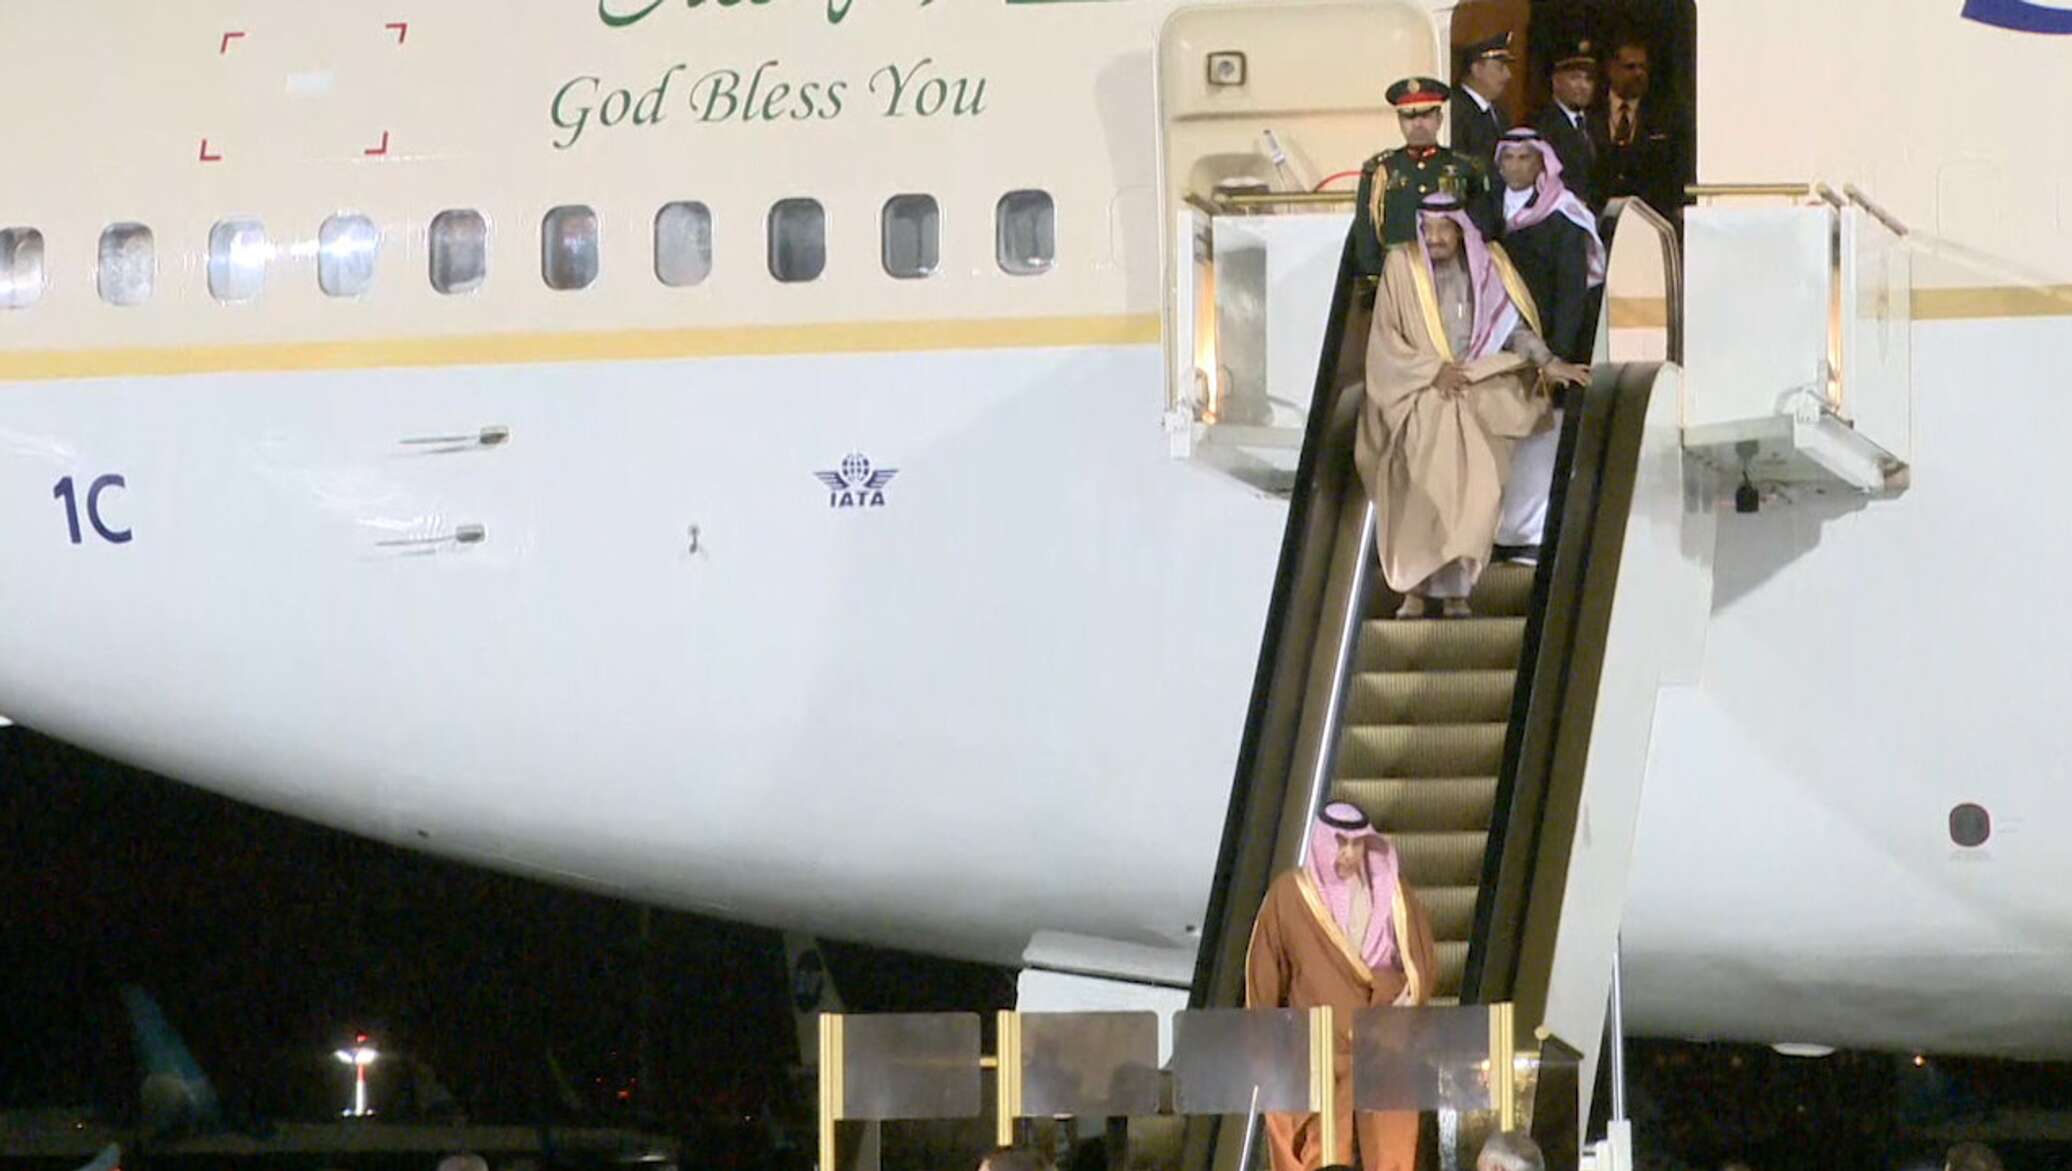 Сошел трапу. Самолет короля Саудовской Аравии. Airbus a380 принца Саудовской Аравии. Самолёт короля Саудовской Аравии фото. Самолет принца Саудовской Аравии.